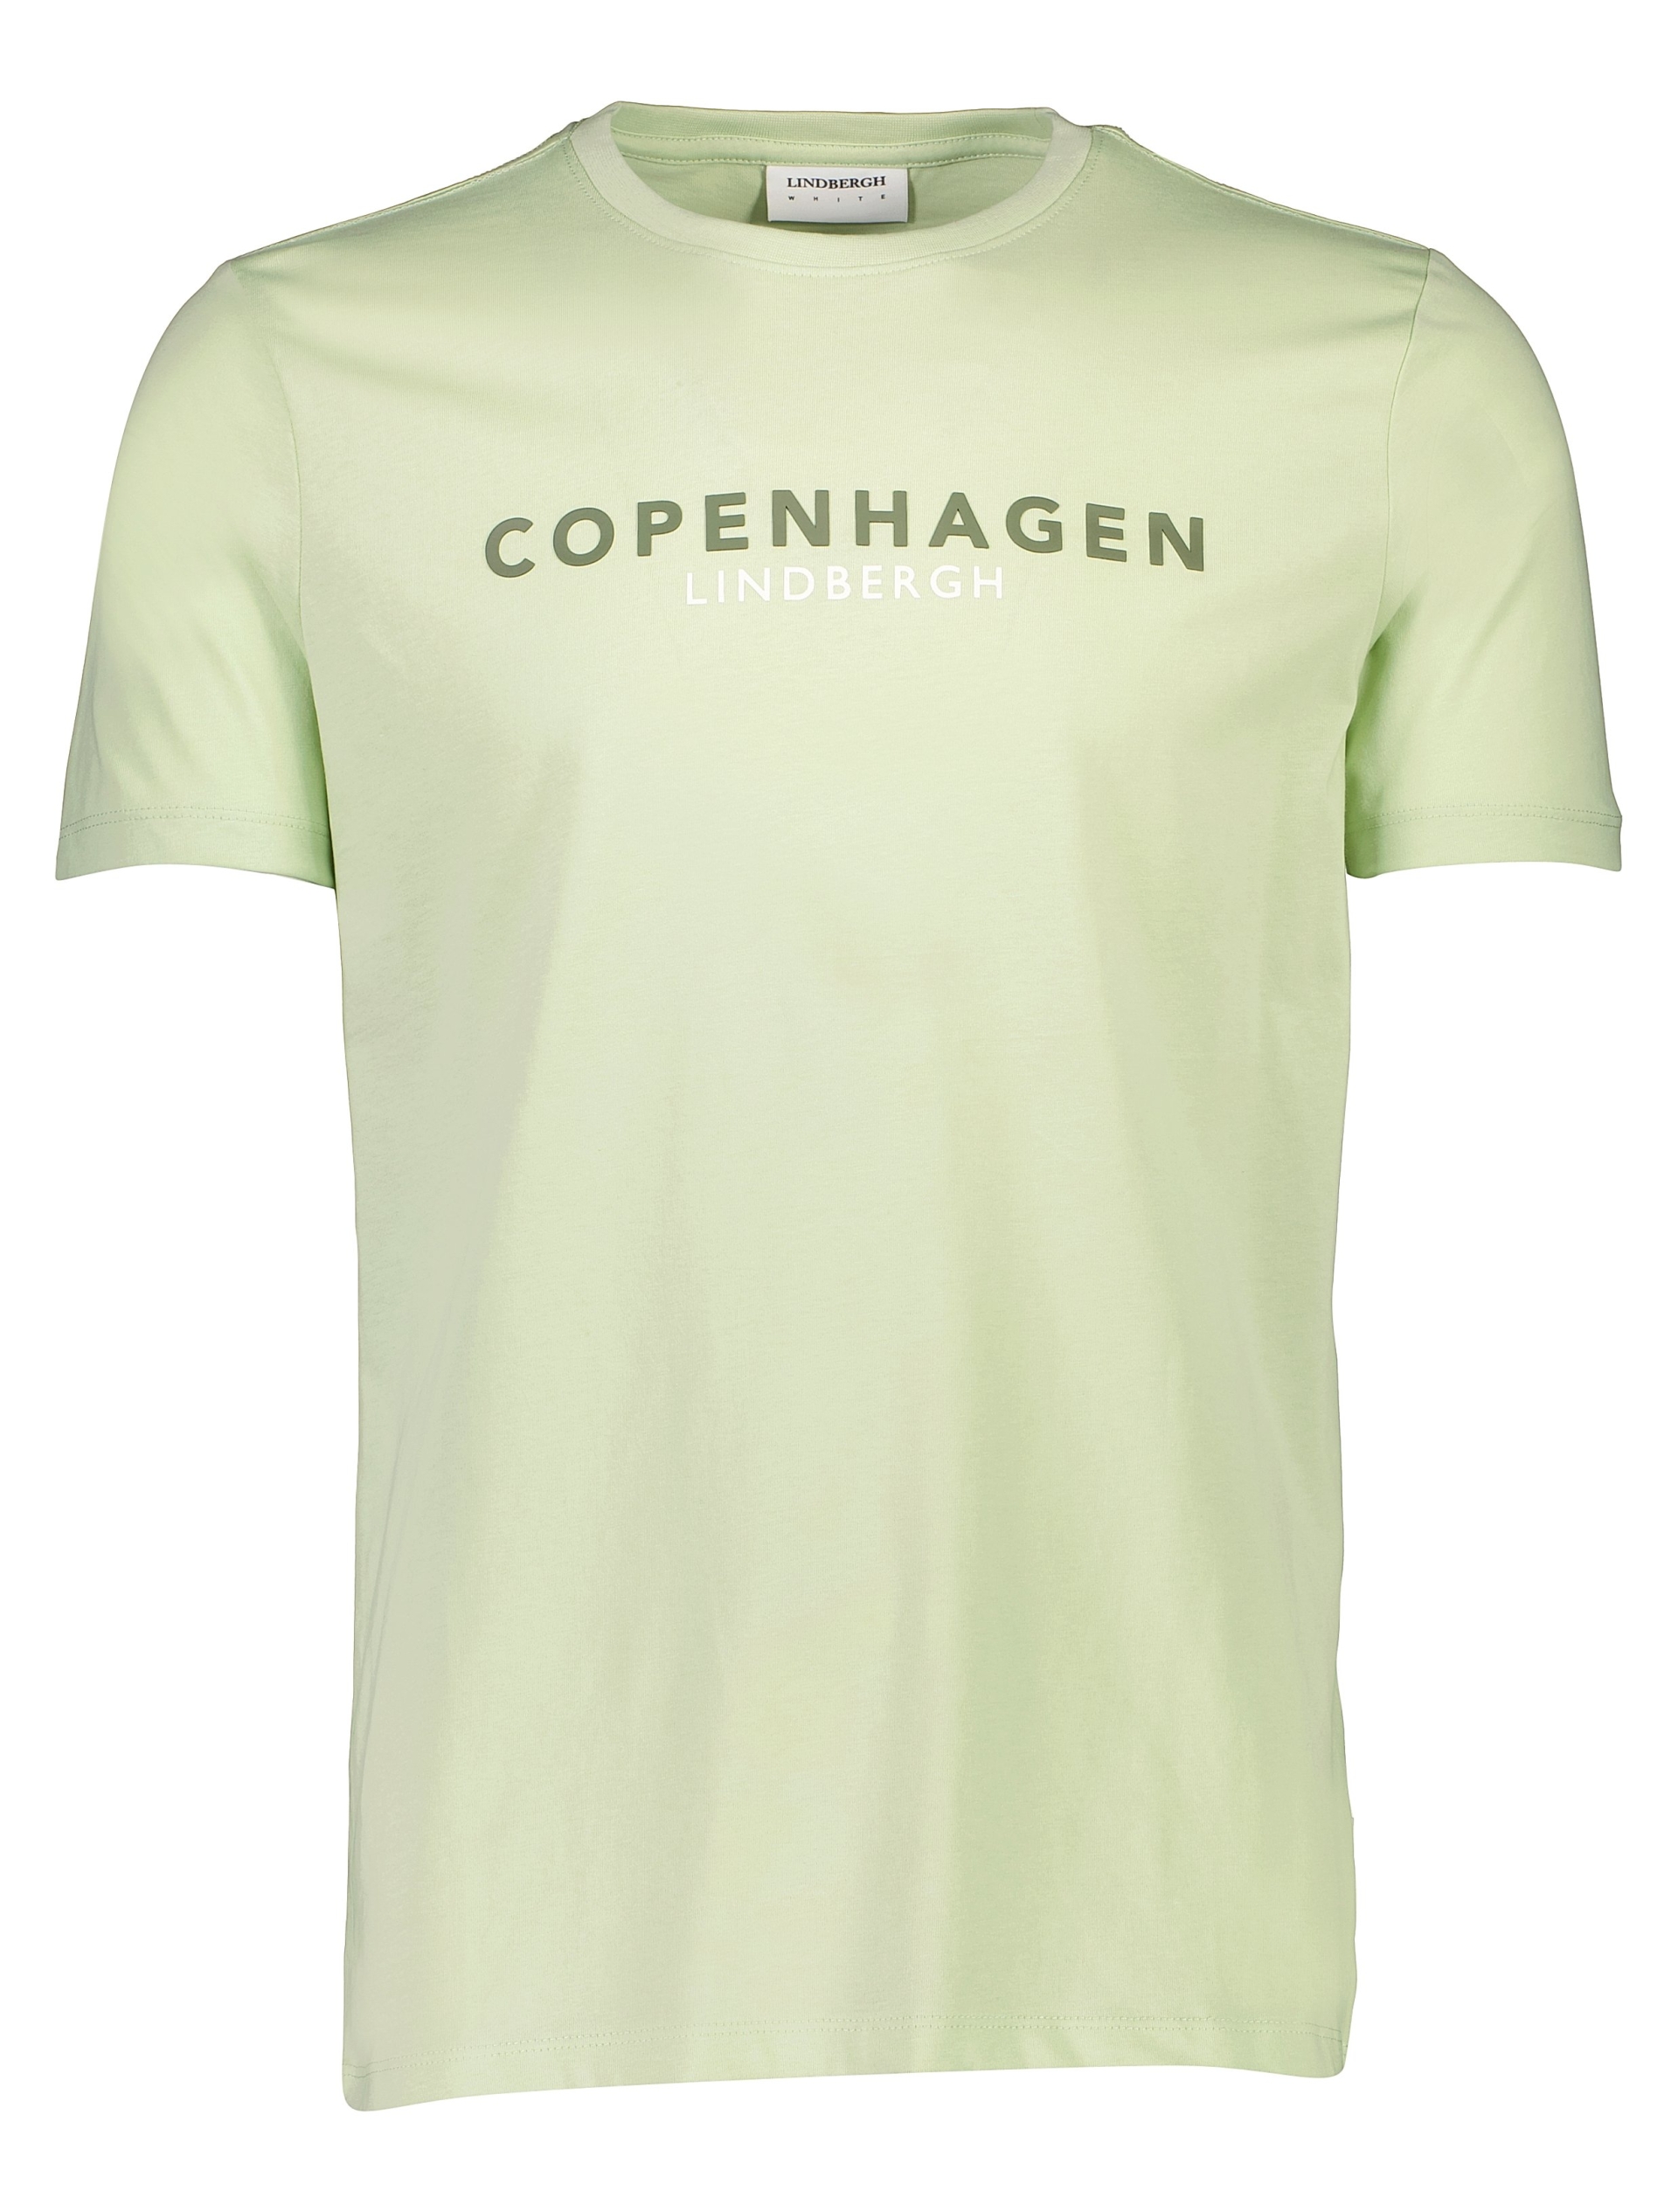 Lindbergh T-shirt grøn / mint 224